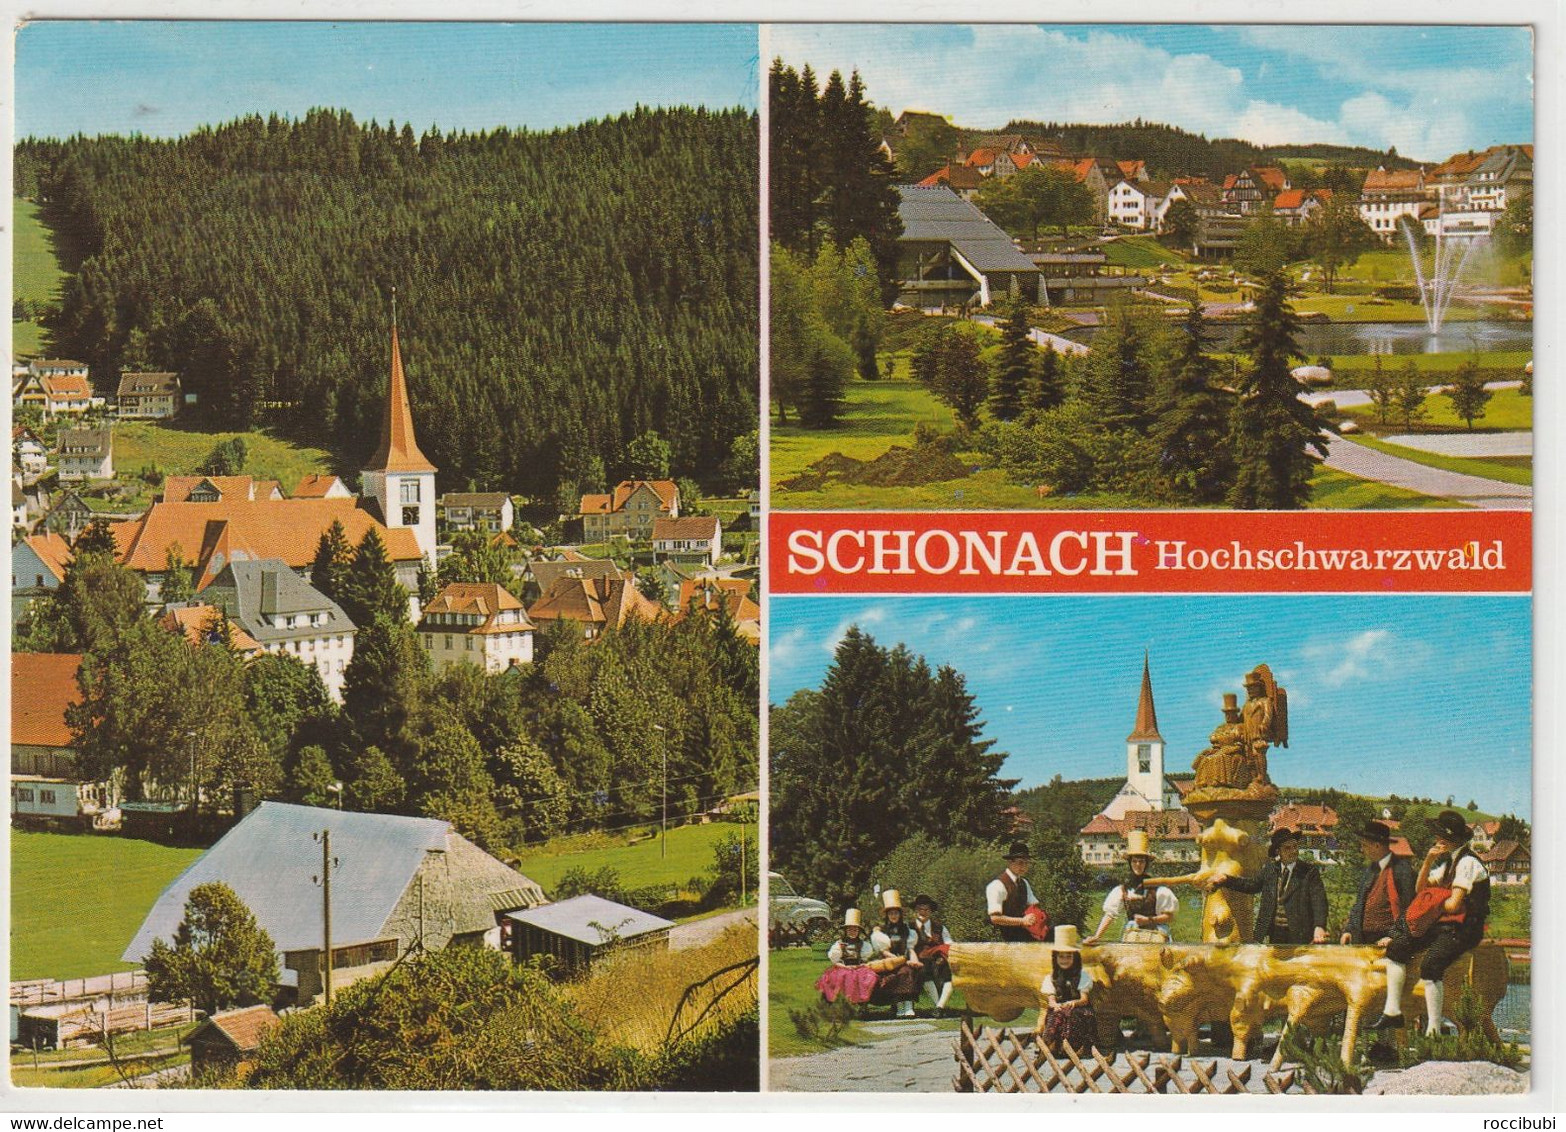 Schonach, Hochschwarzwald, Baden-Württemberg - Hochschwarzwald